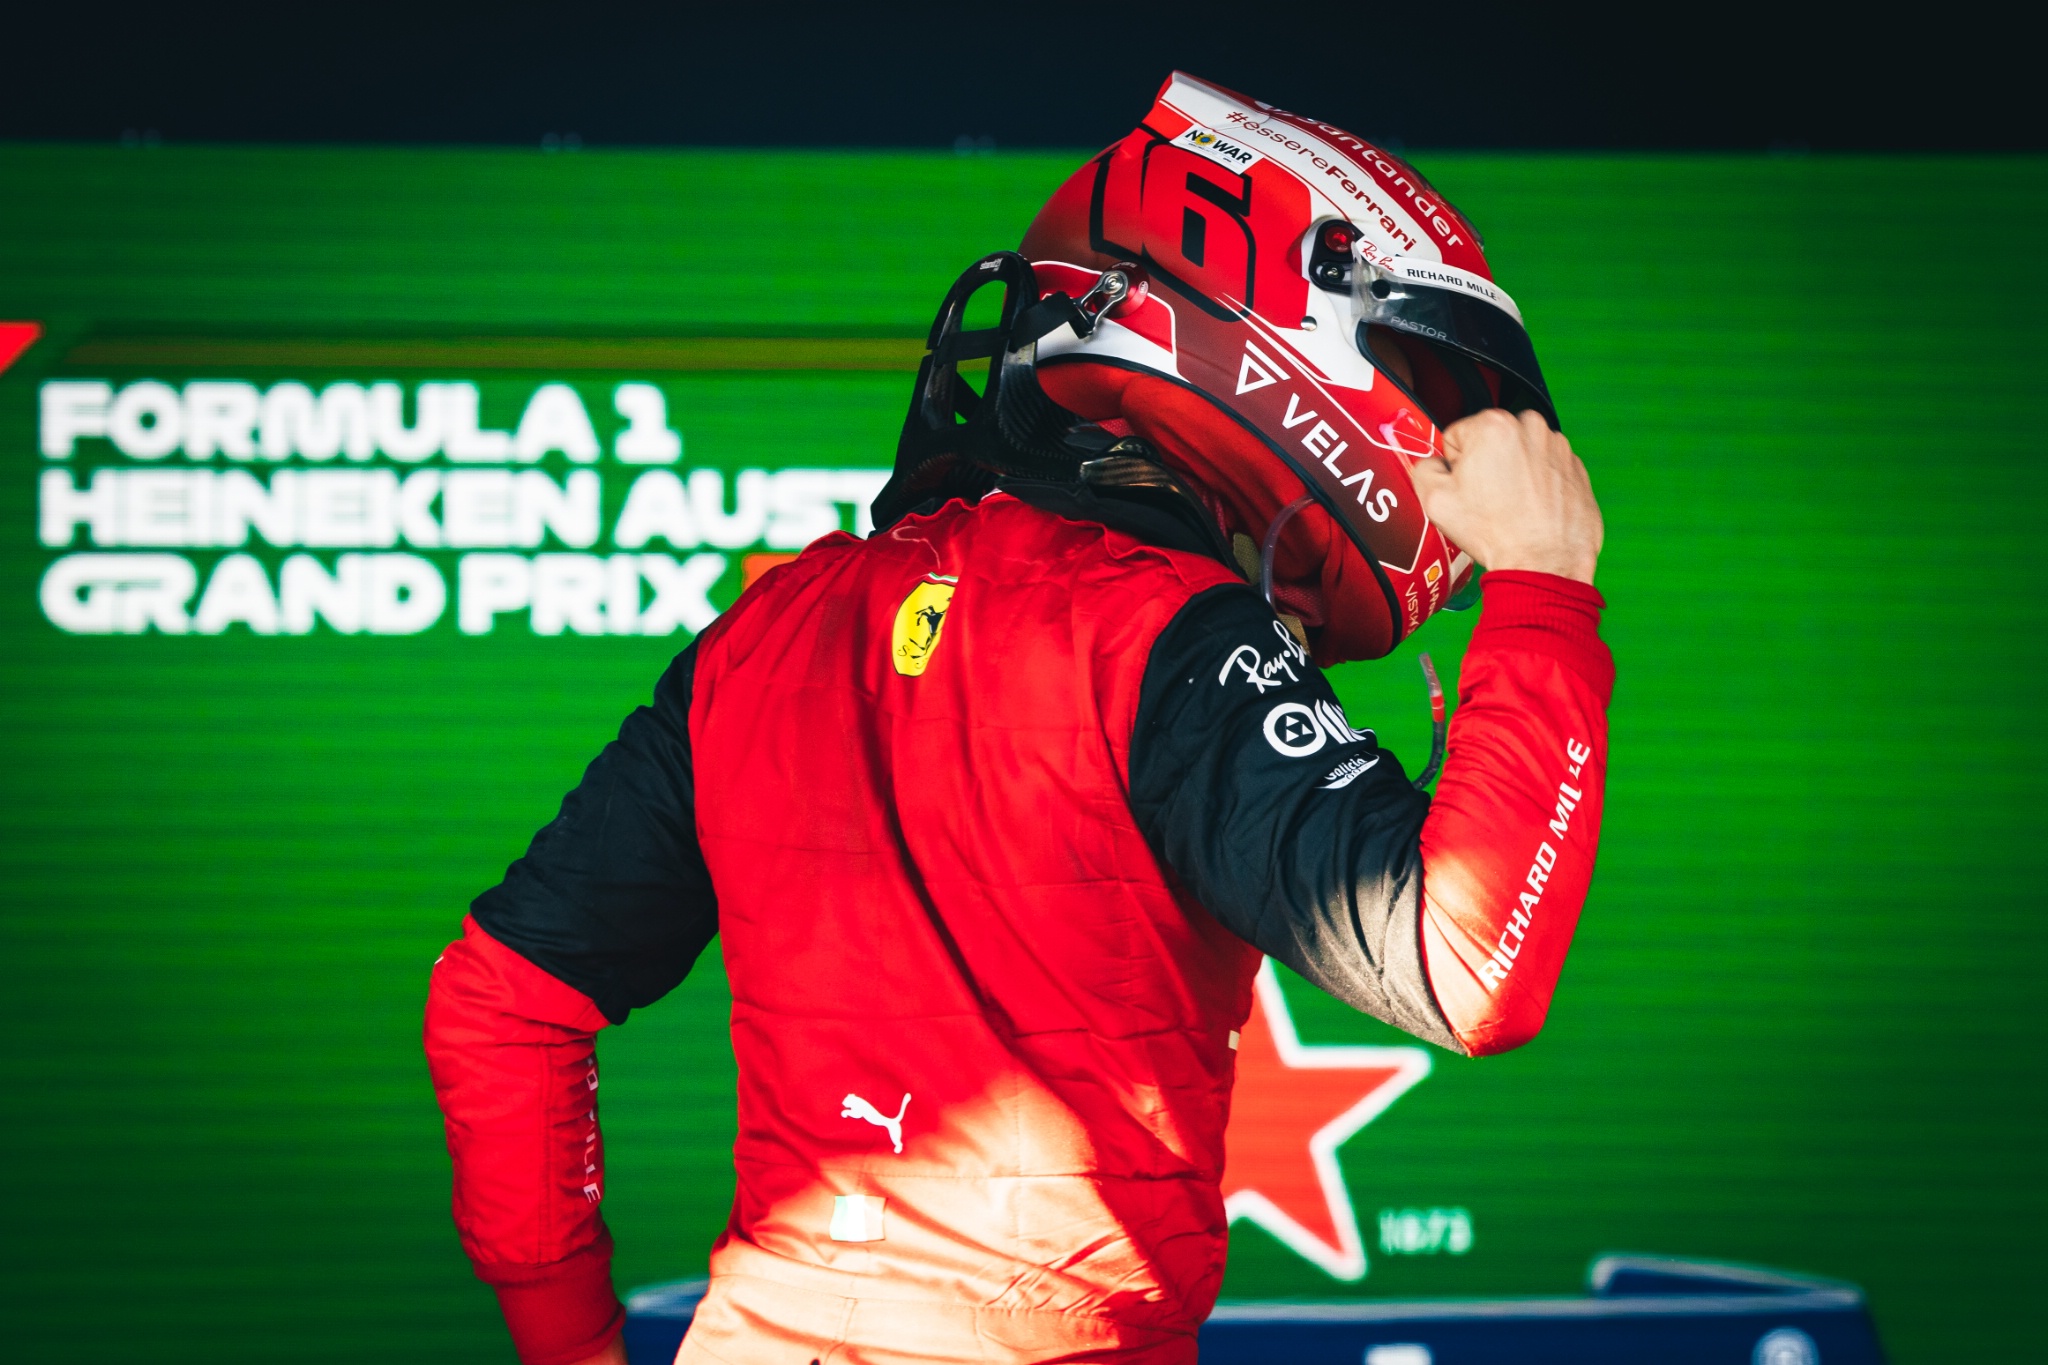 Pemenang lomba Charles Leclerc] (MON) Ferrari merayakan di parc ferme. Kejuaraan Dunia Formula 1, Rd 3, Australian Grand